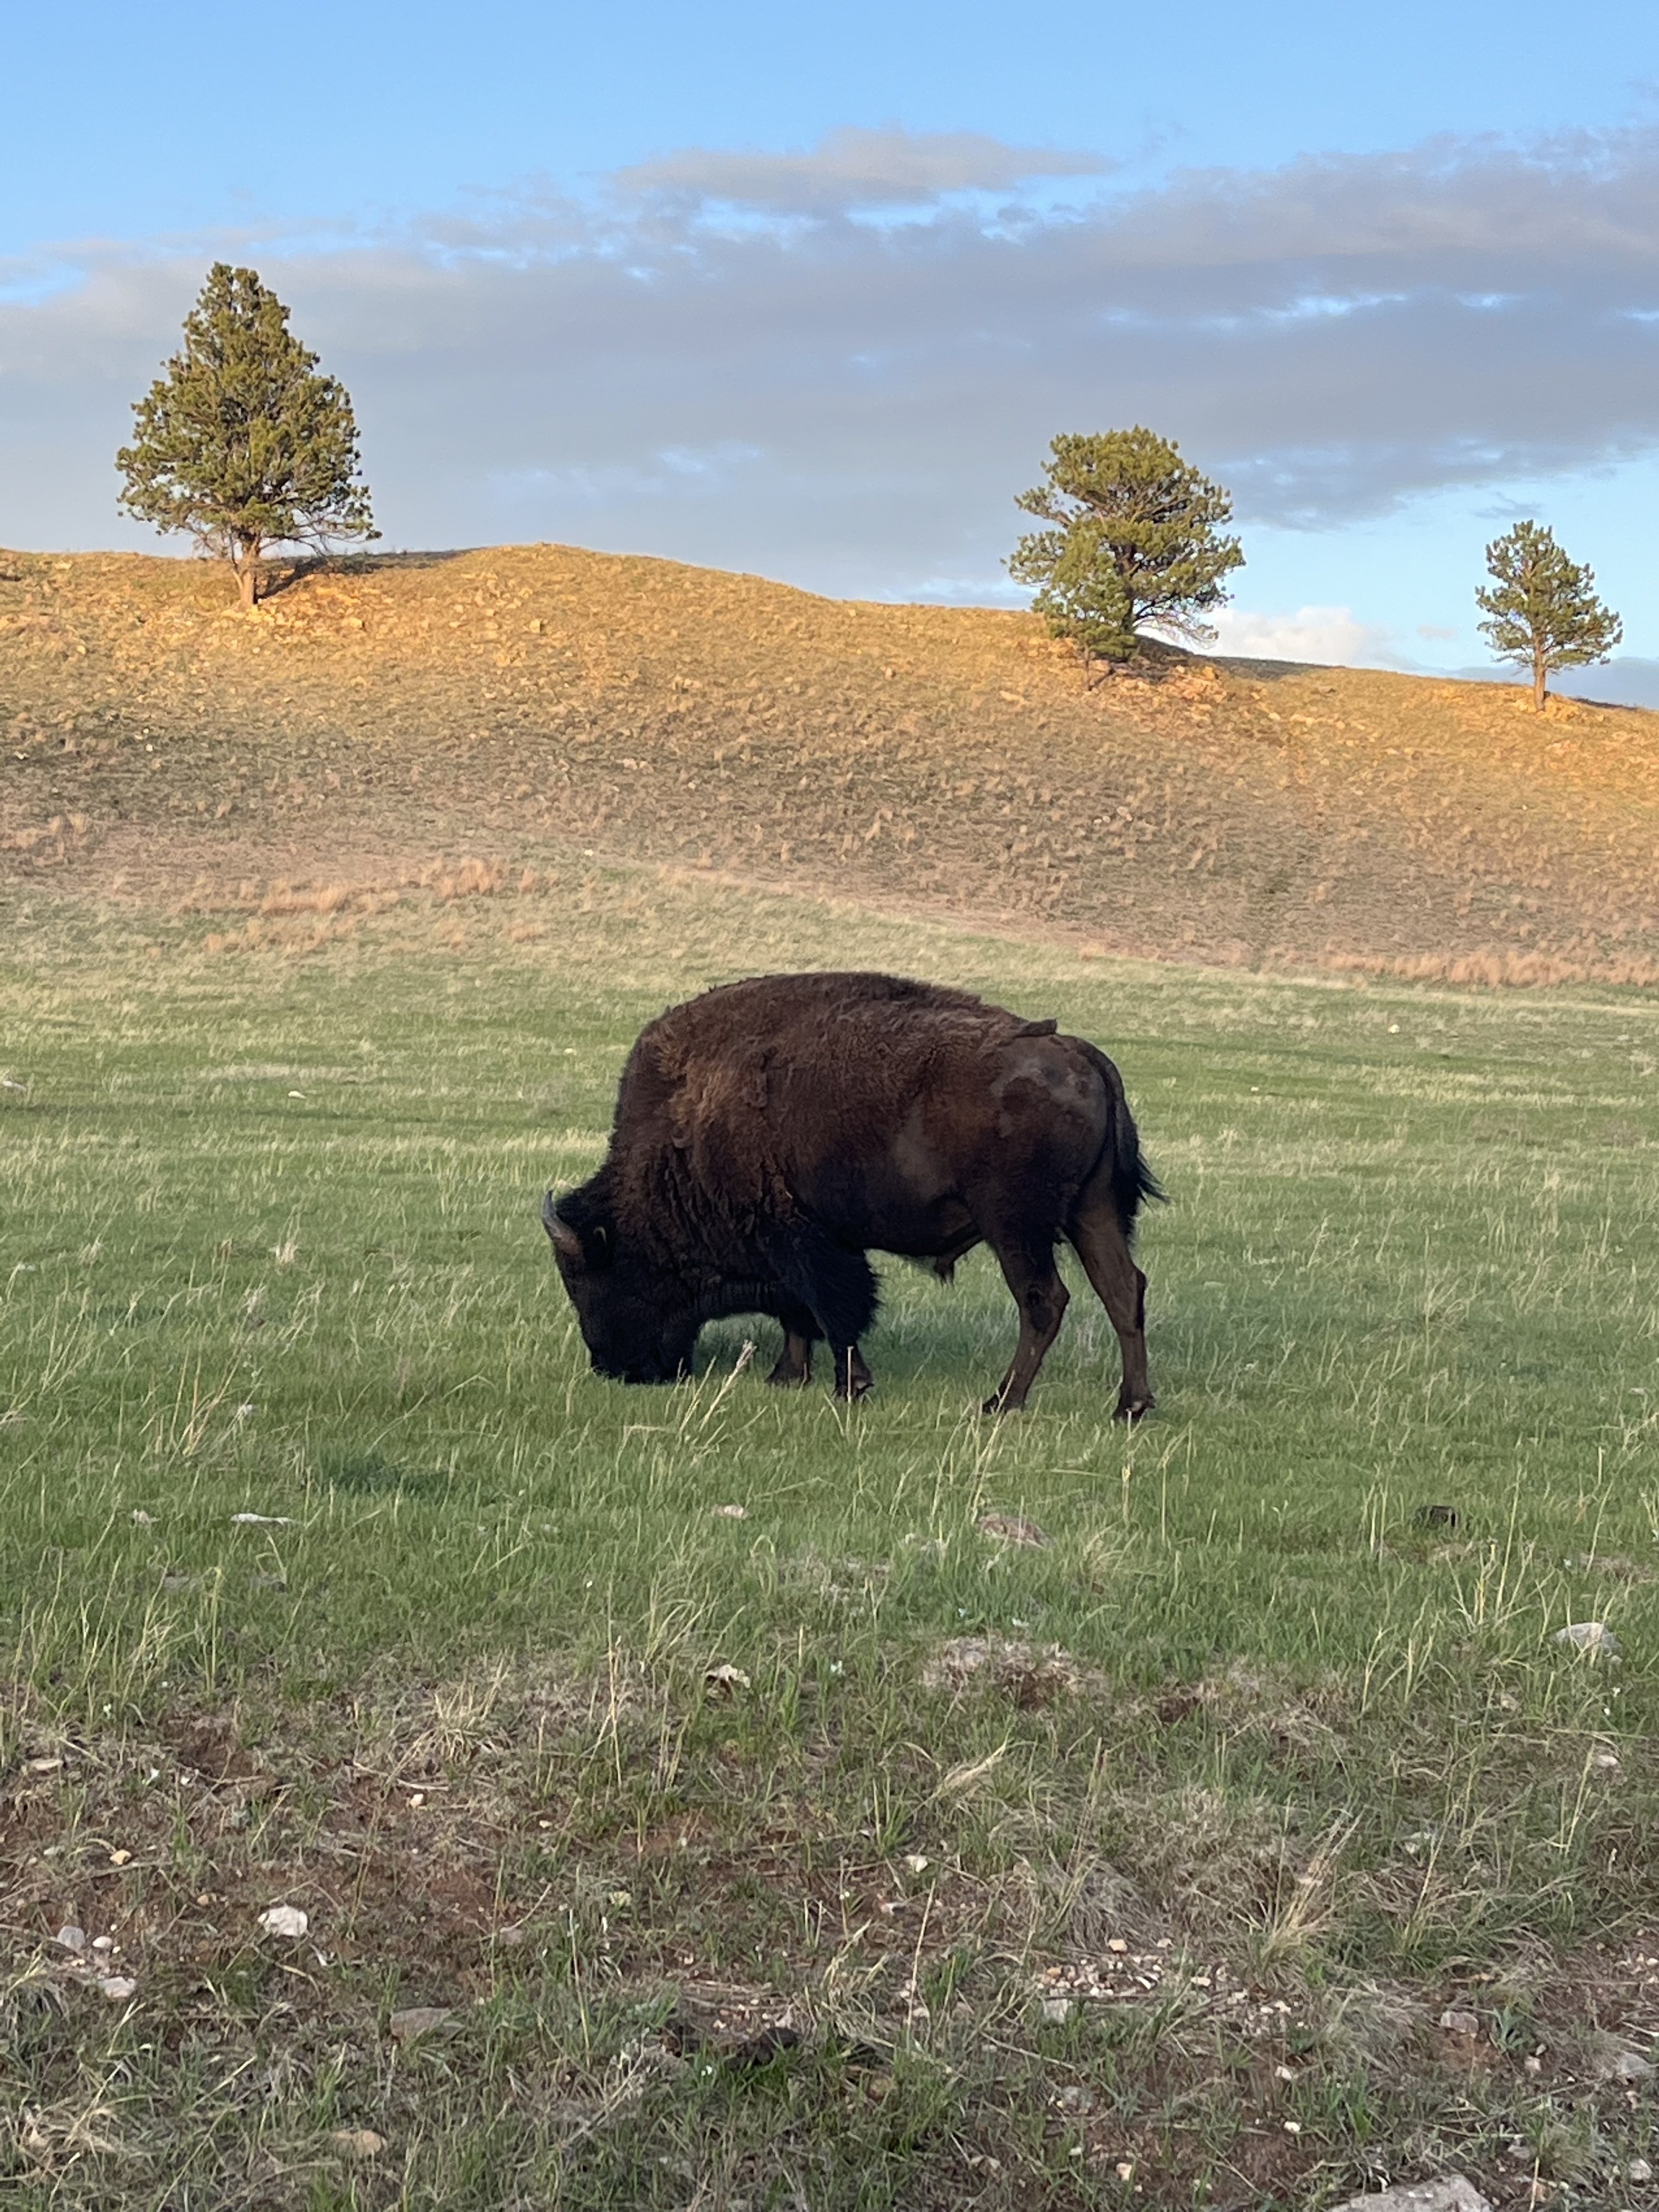 Buffalo in a field